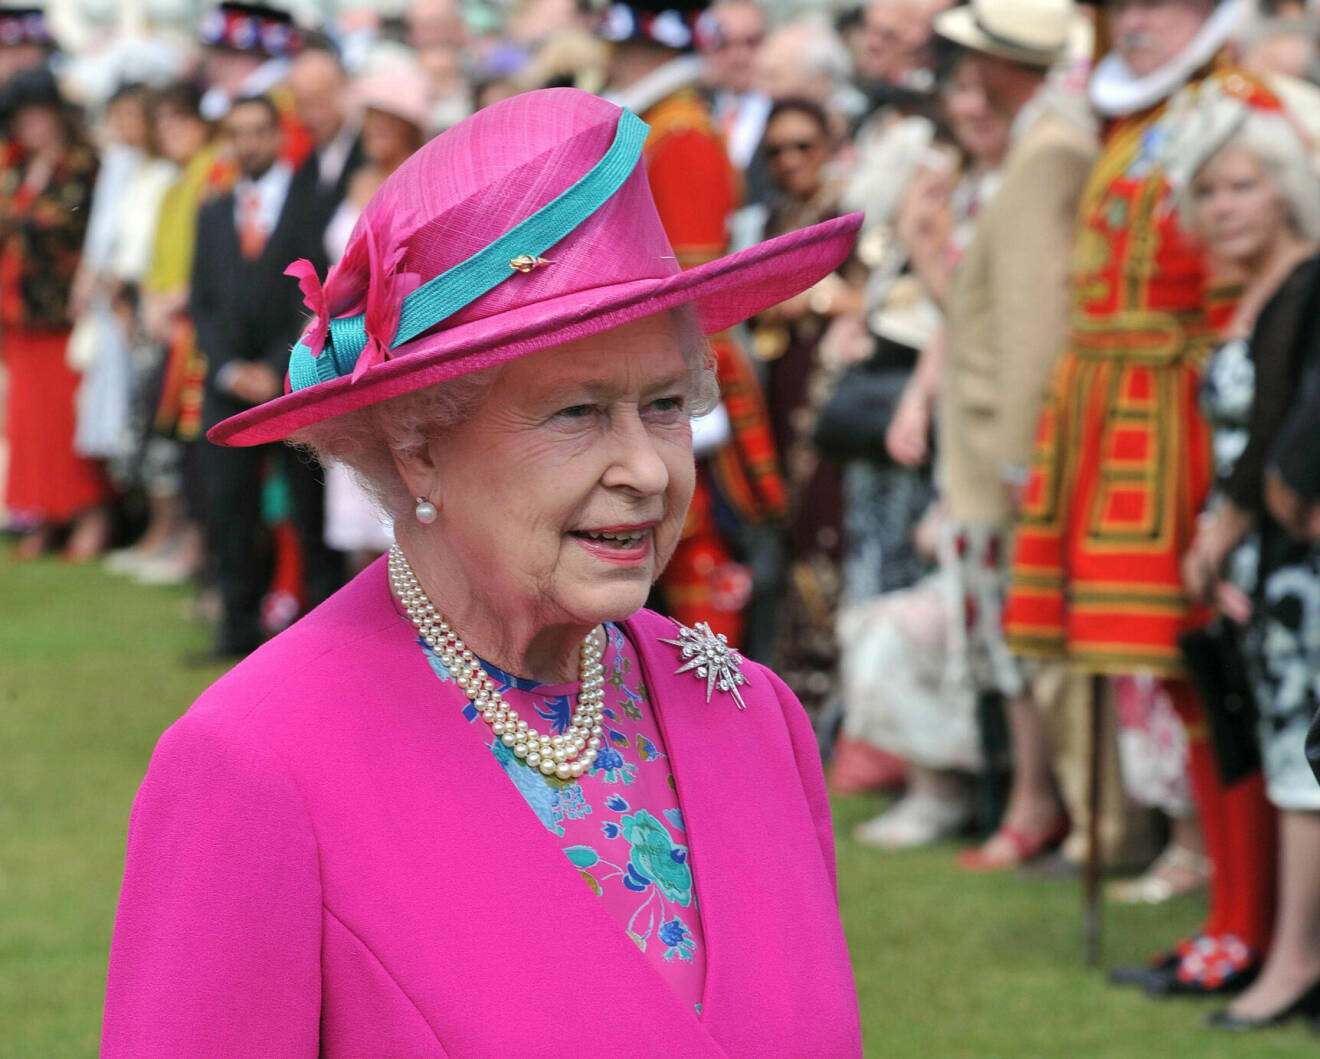 Drottning Elizabeth på gardenparty klädd i chockrosa